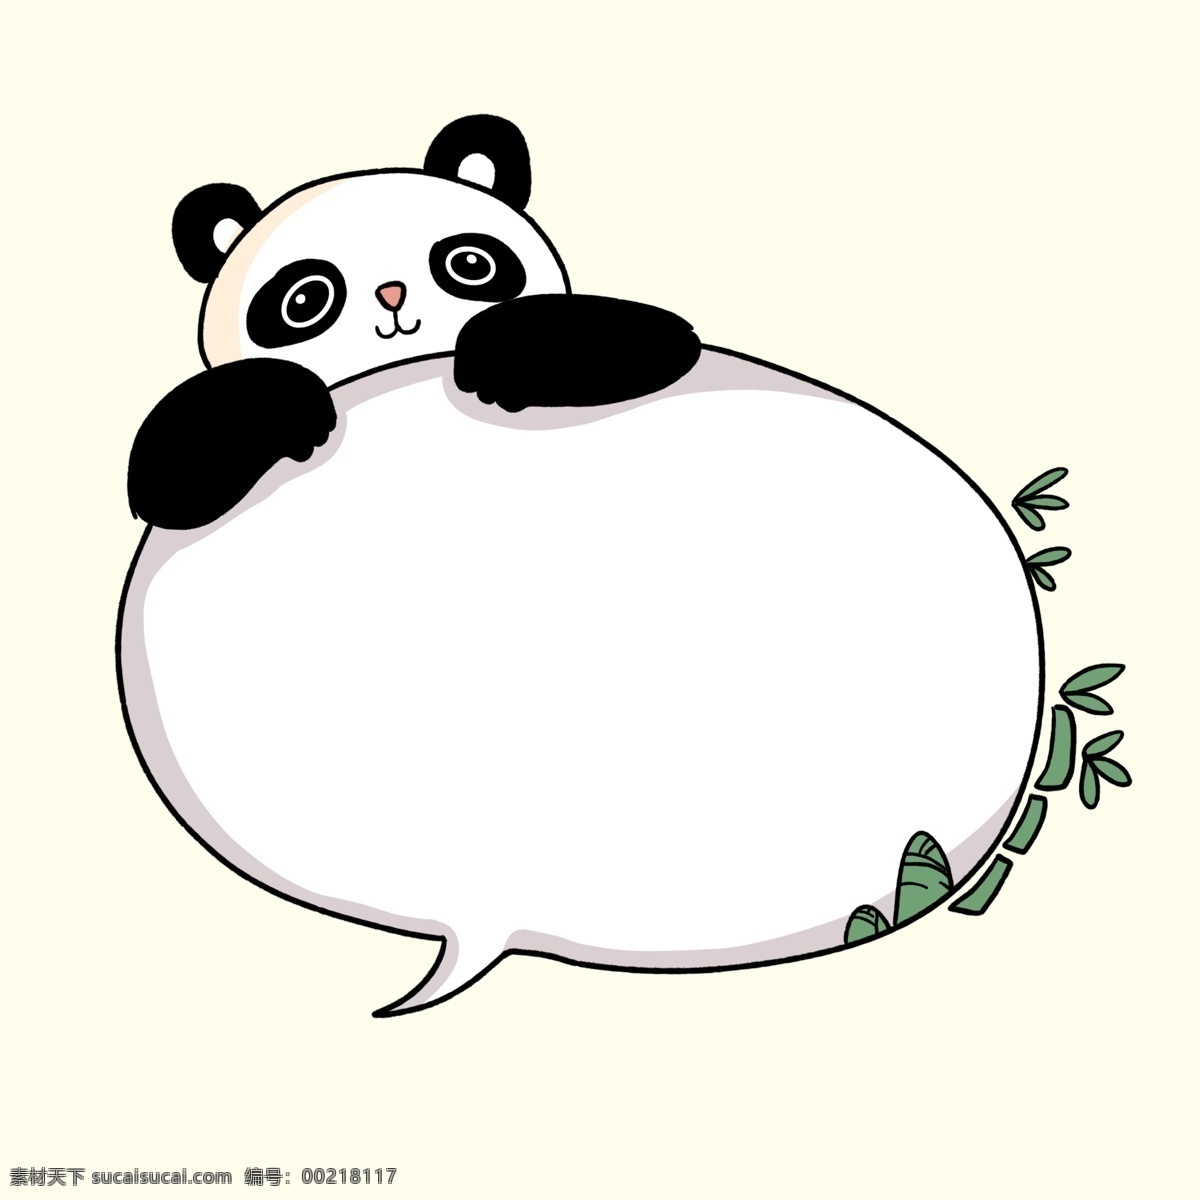 卡通 手绘 可爱 熊猫 动物 边框 可爱熊猫 动物边框 对话框